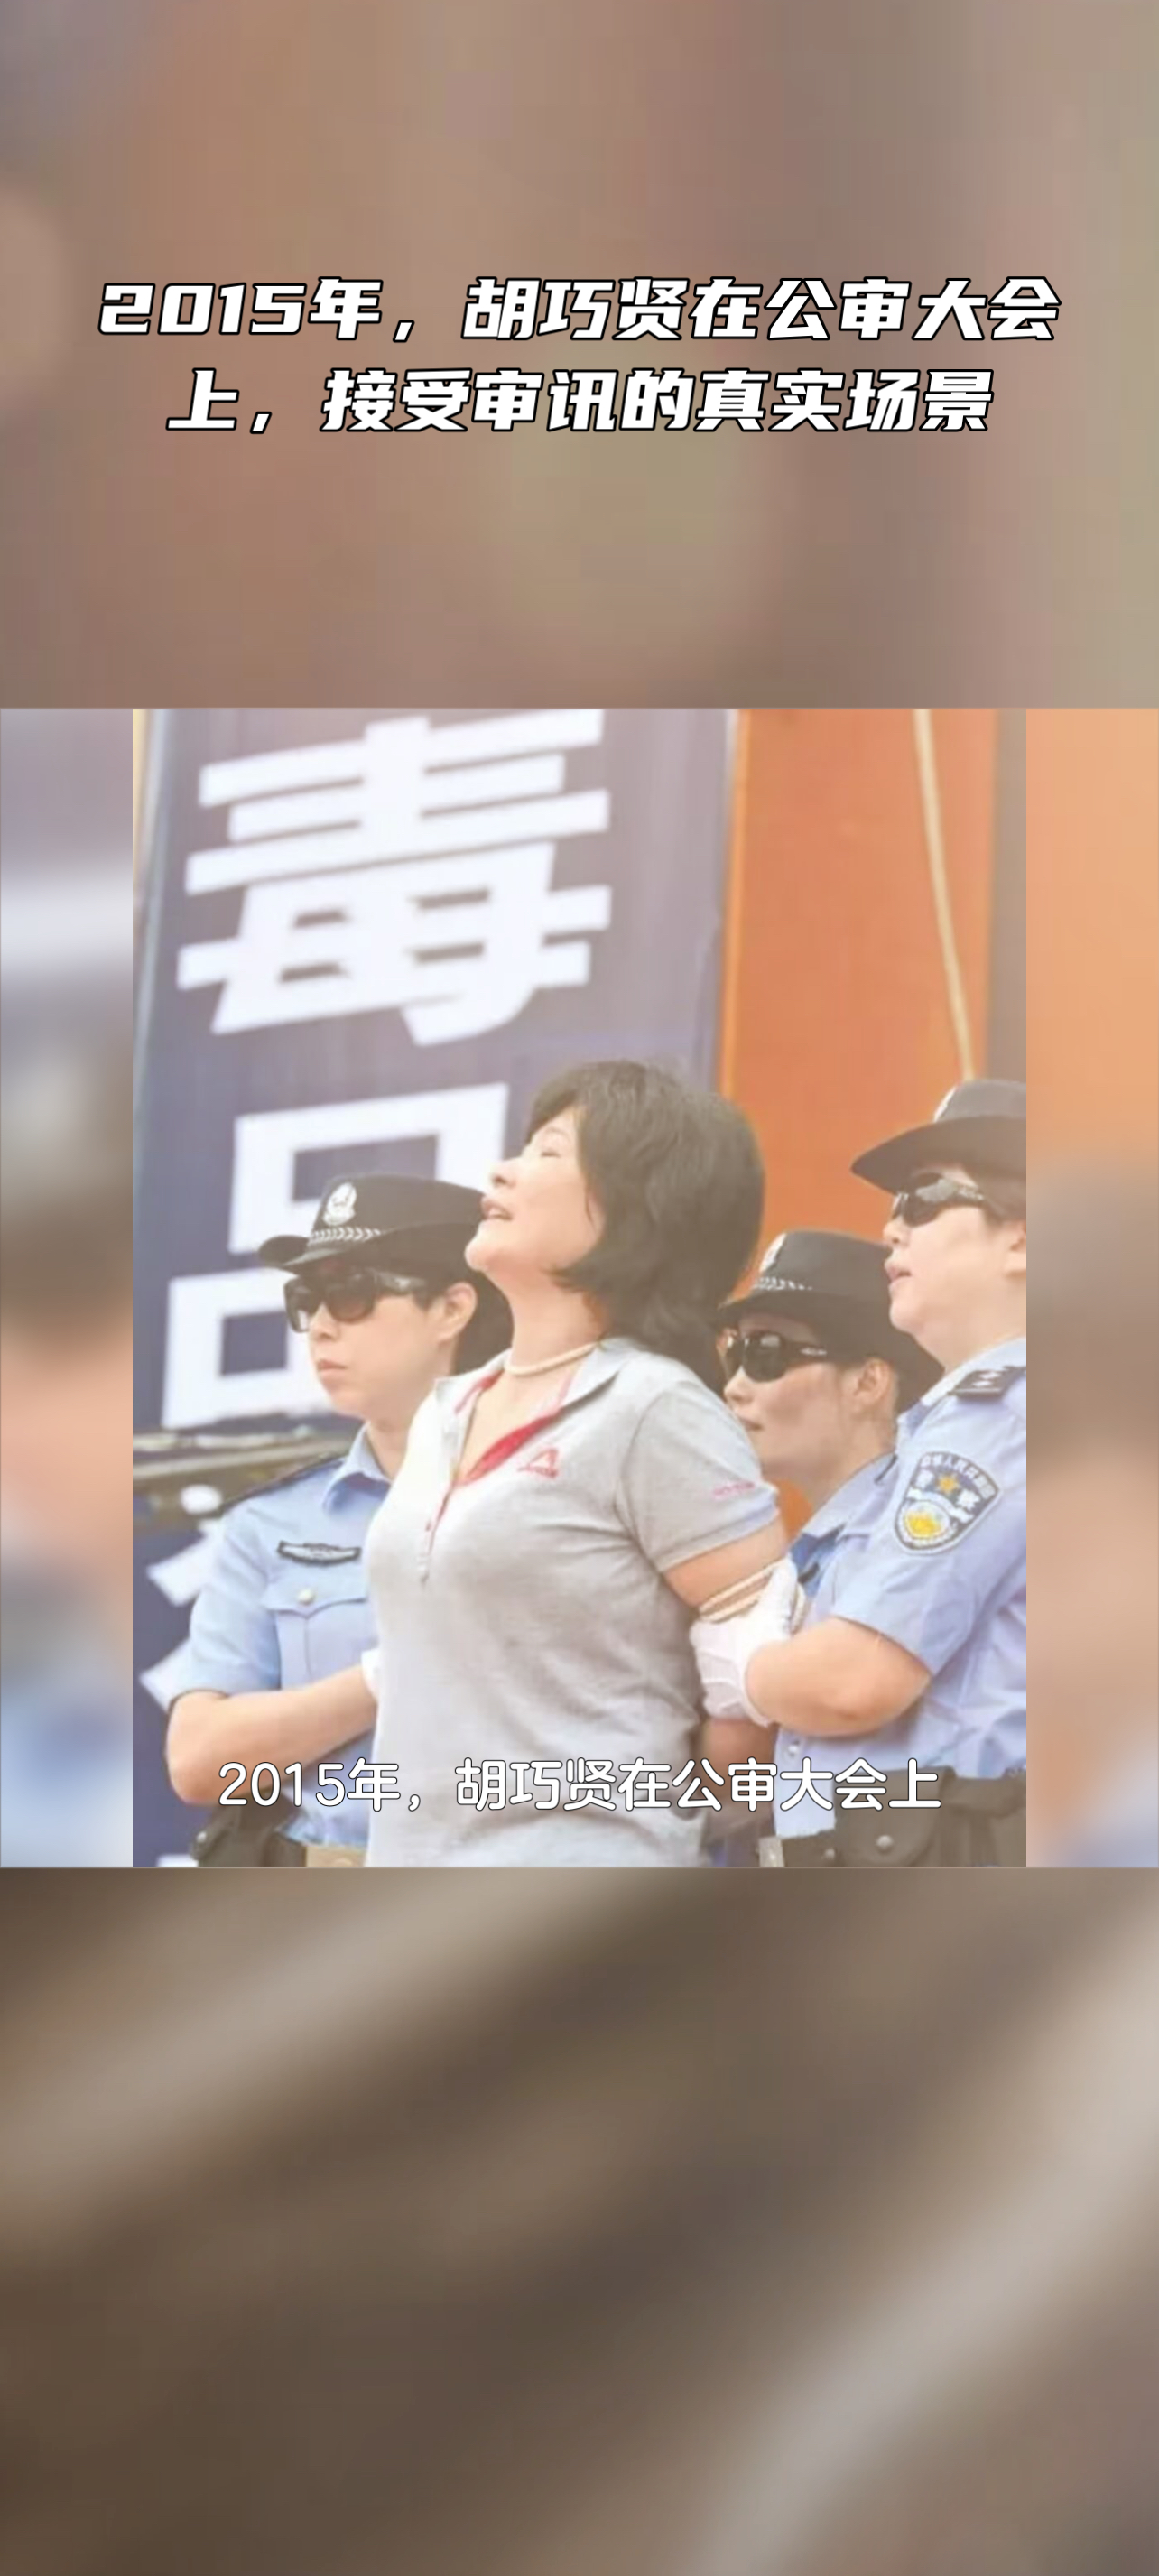 2015年,胡巧贤在公审大会上,接受审讯的真实场景